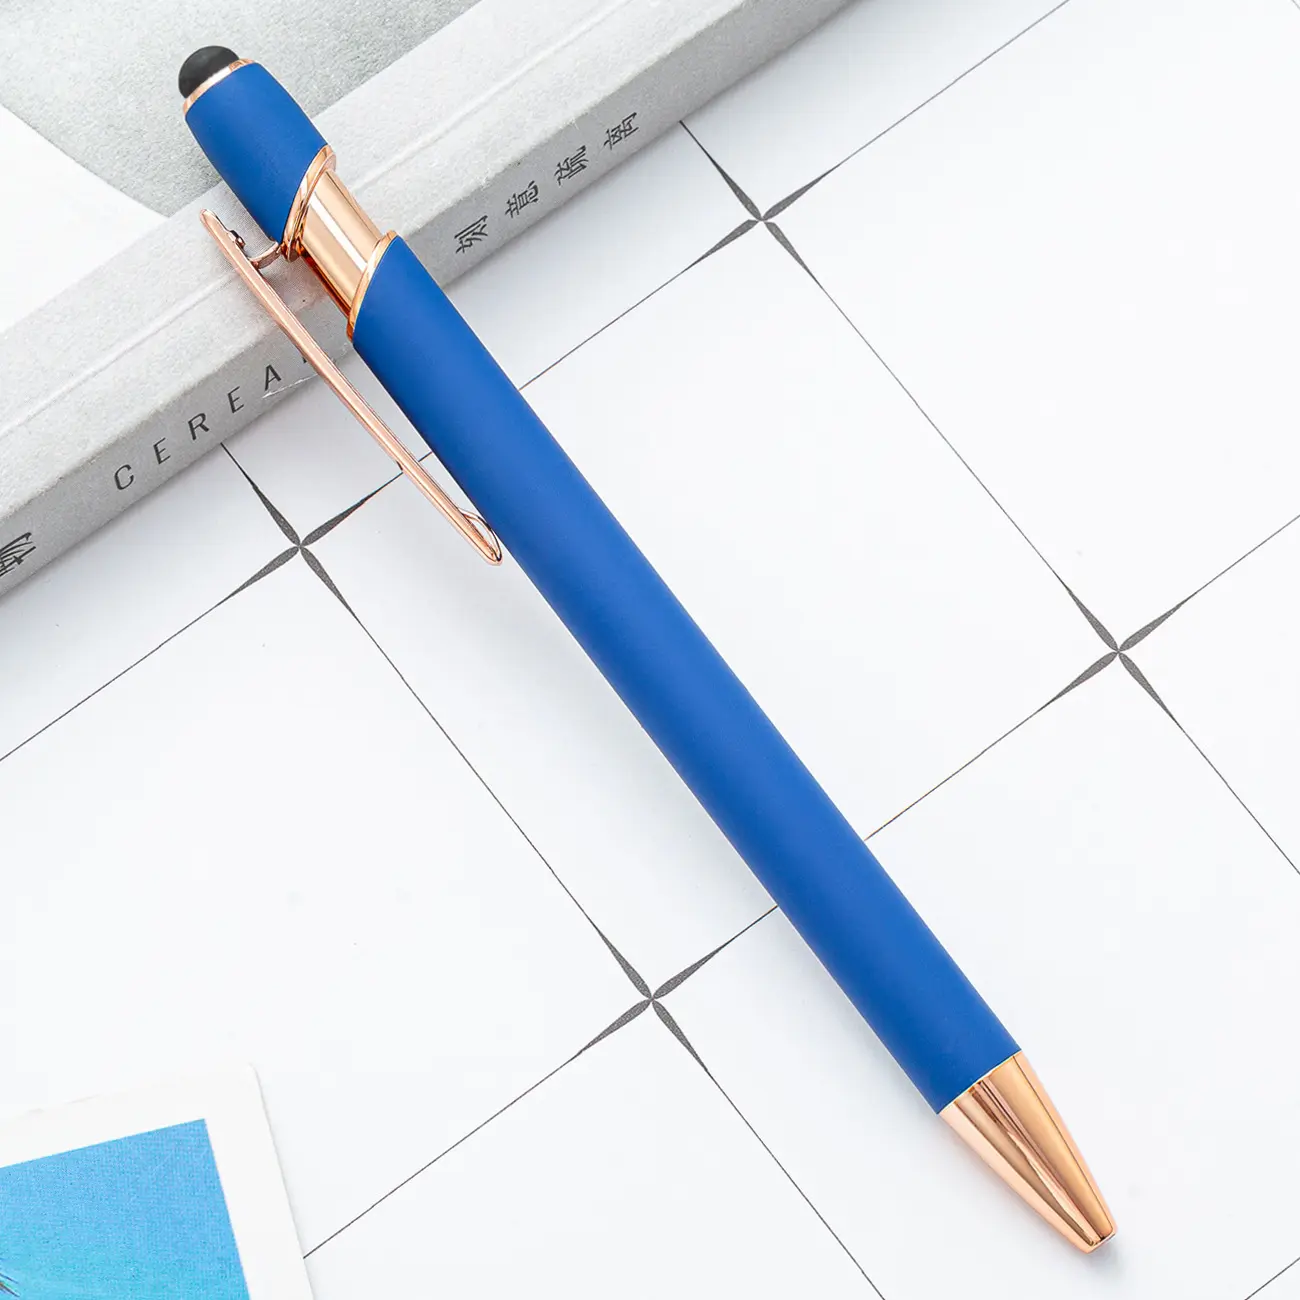 Lüks markalı yazma kişiselleştirilmiş çok fonksiyonlu yumuşak dokunmatik Stylus Logo ile promosyon özel tükenmez Metal kalem baskılı